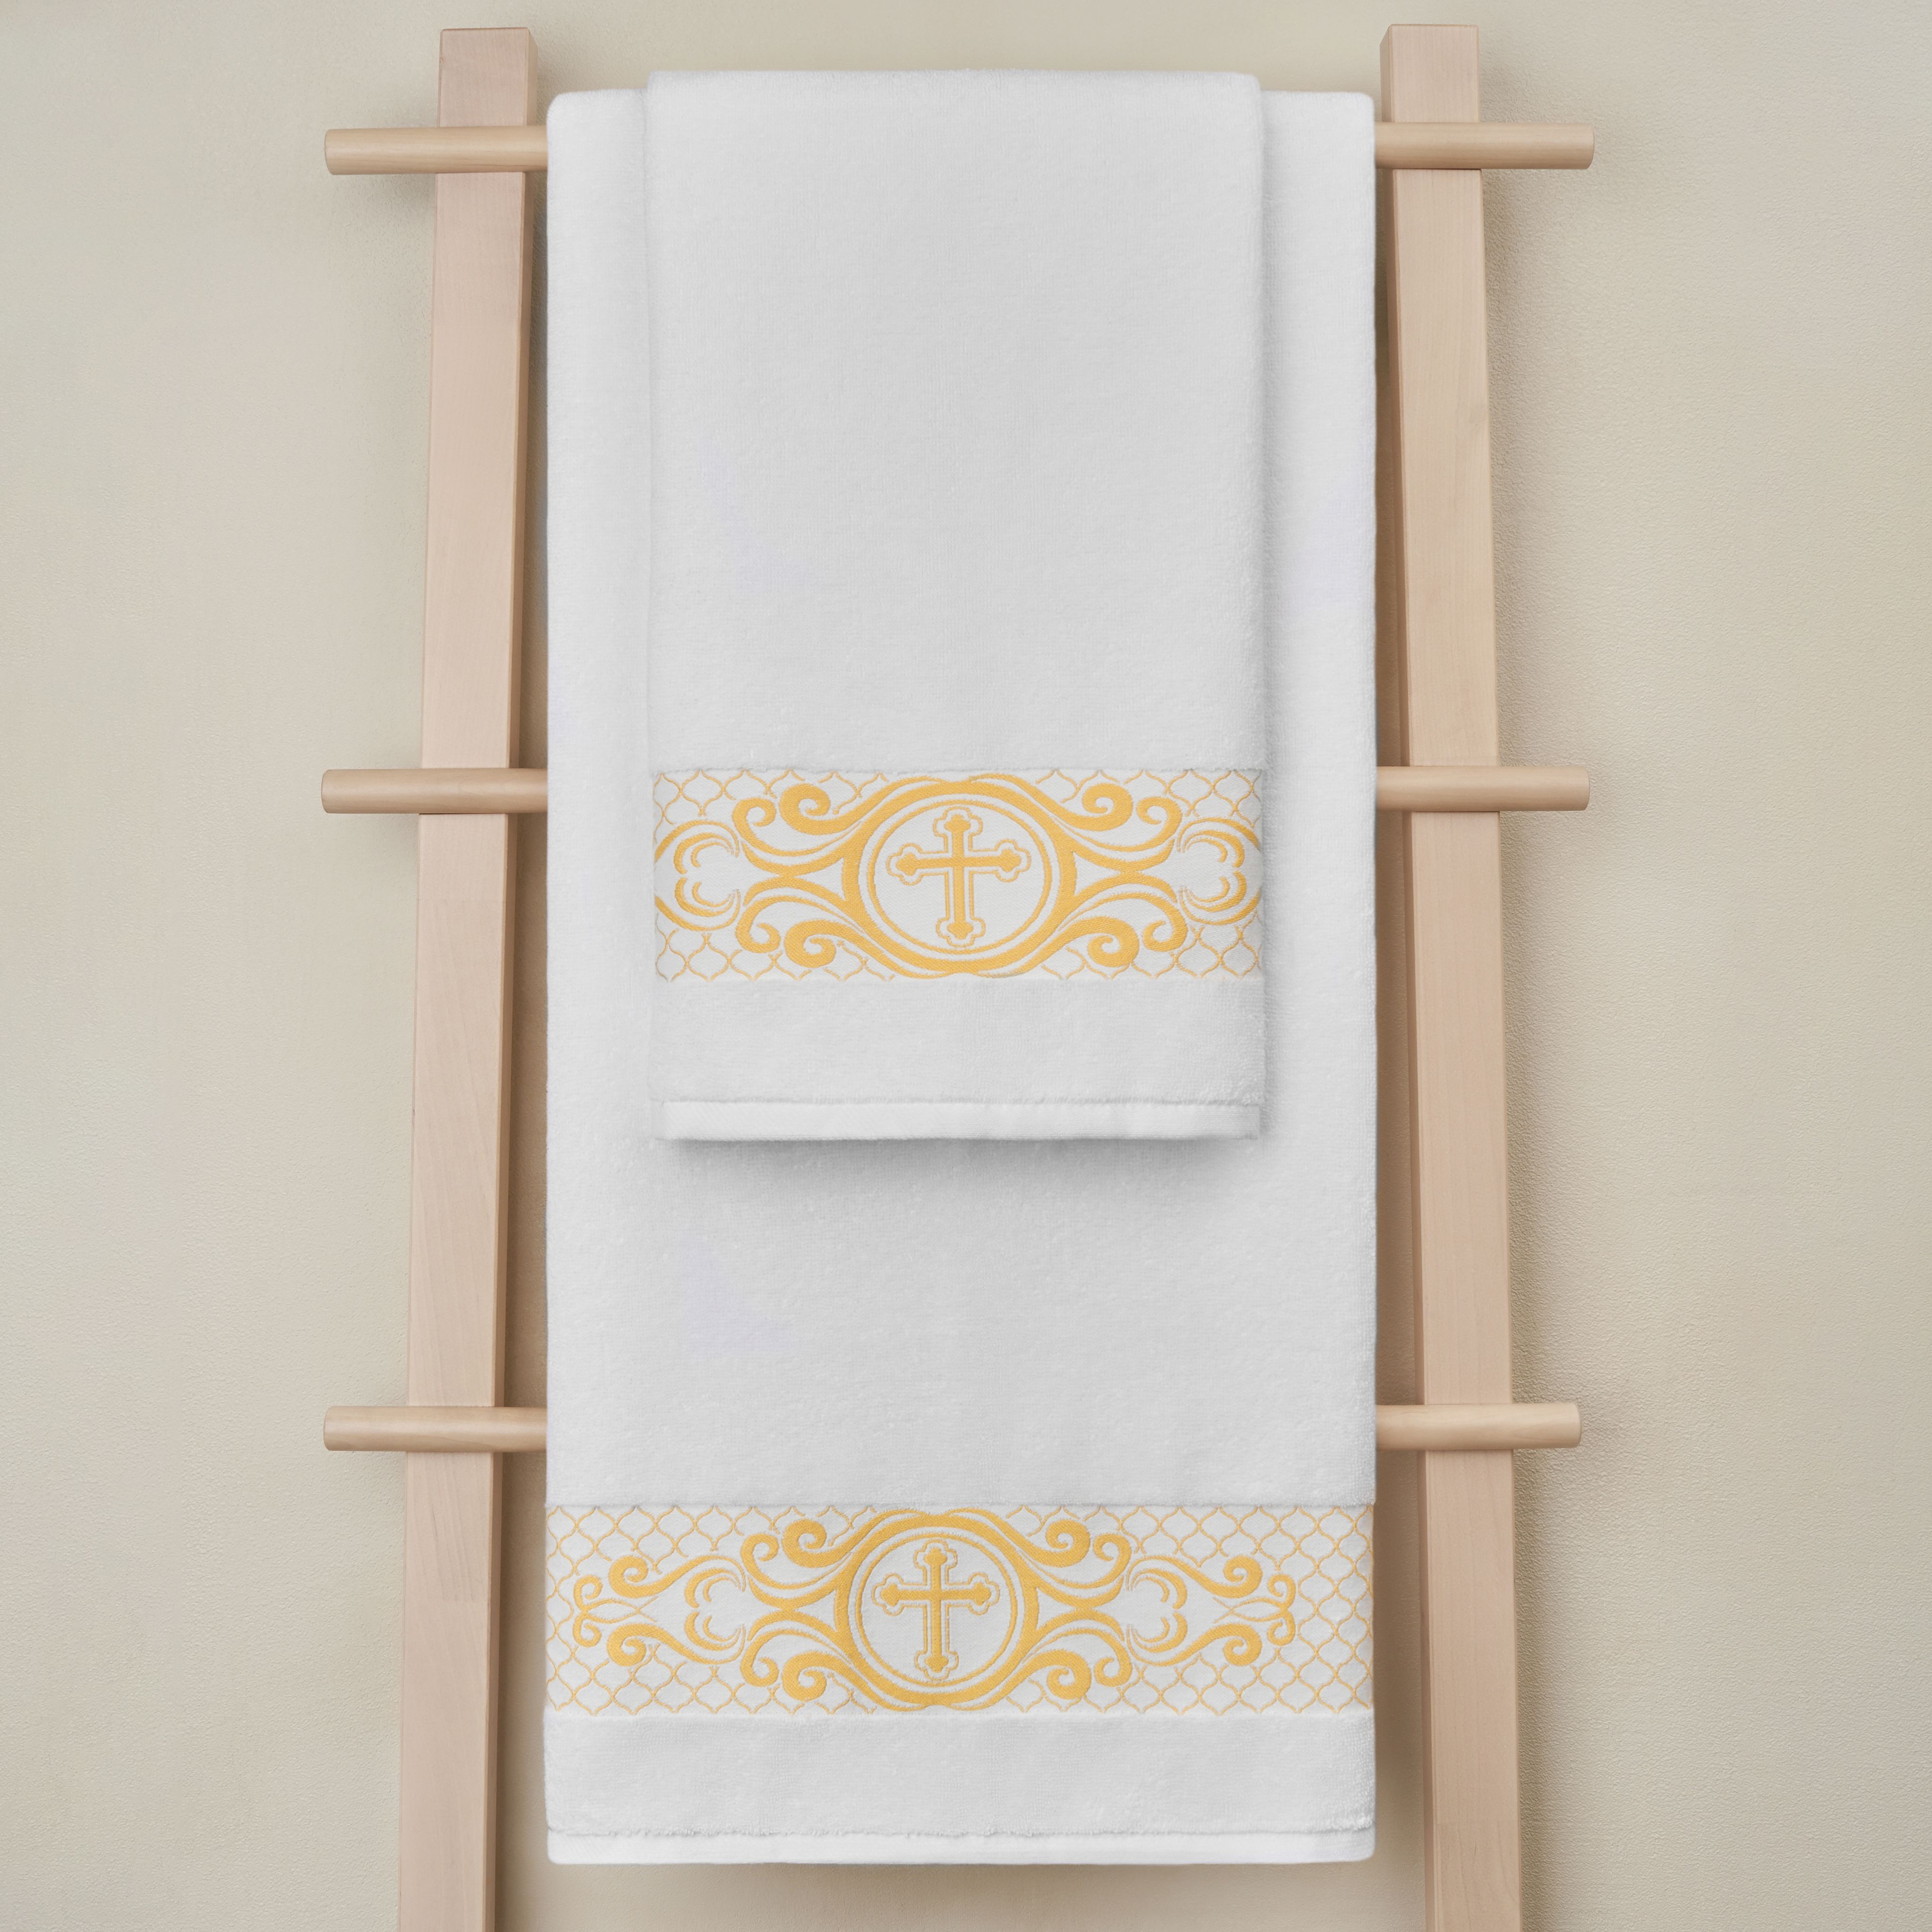 Полотенце Arya Home Collection крестильное махровое 70x140 с вышивкой - фото 3